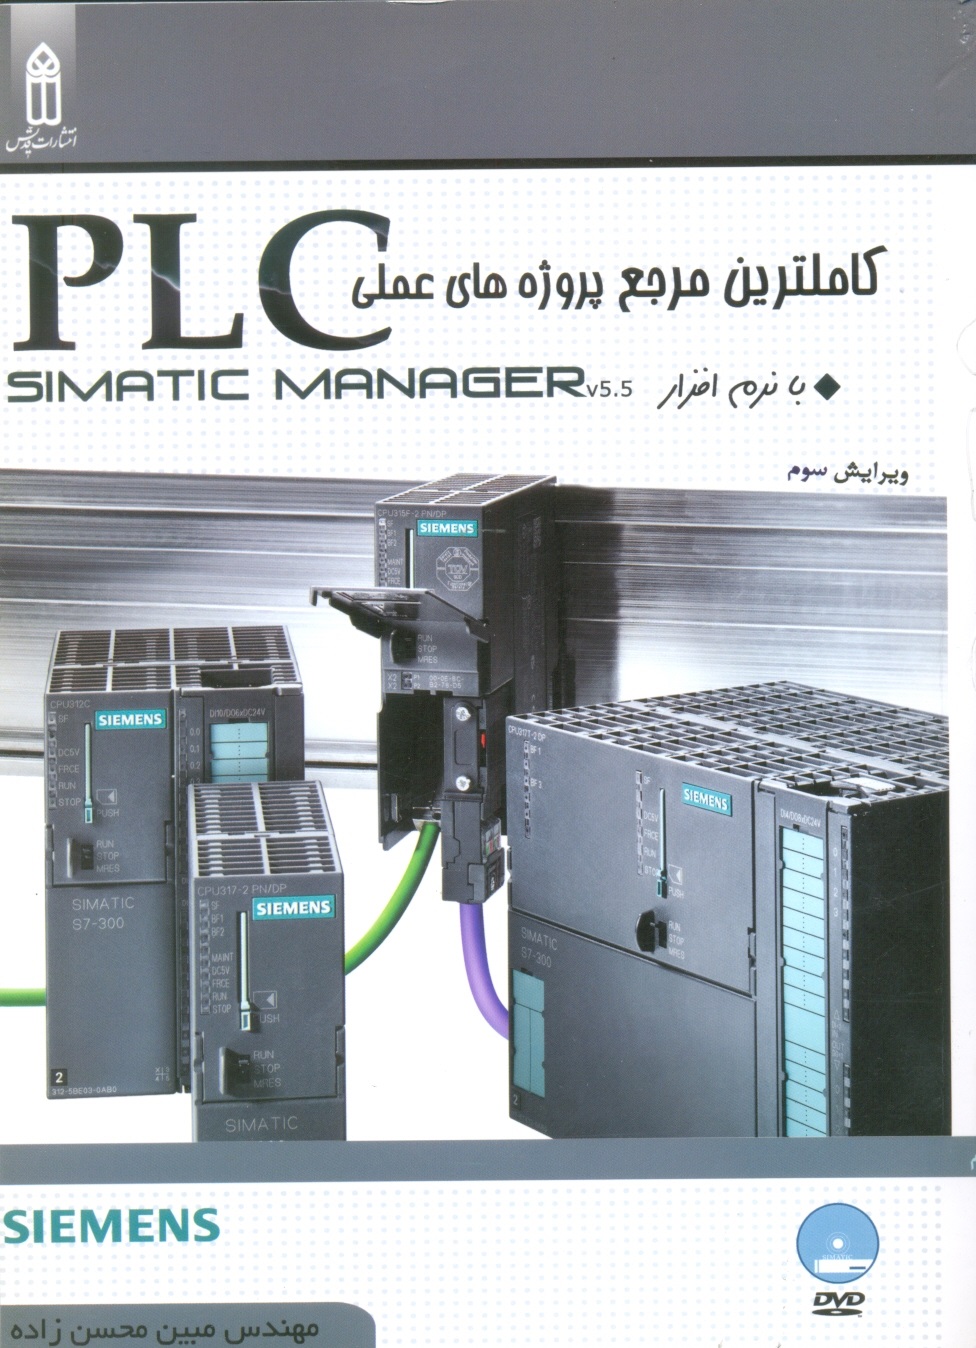 کاملترین مرجع پروژه های عملیplc simatic manager5.5-محسن زاده/قدیس